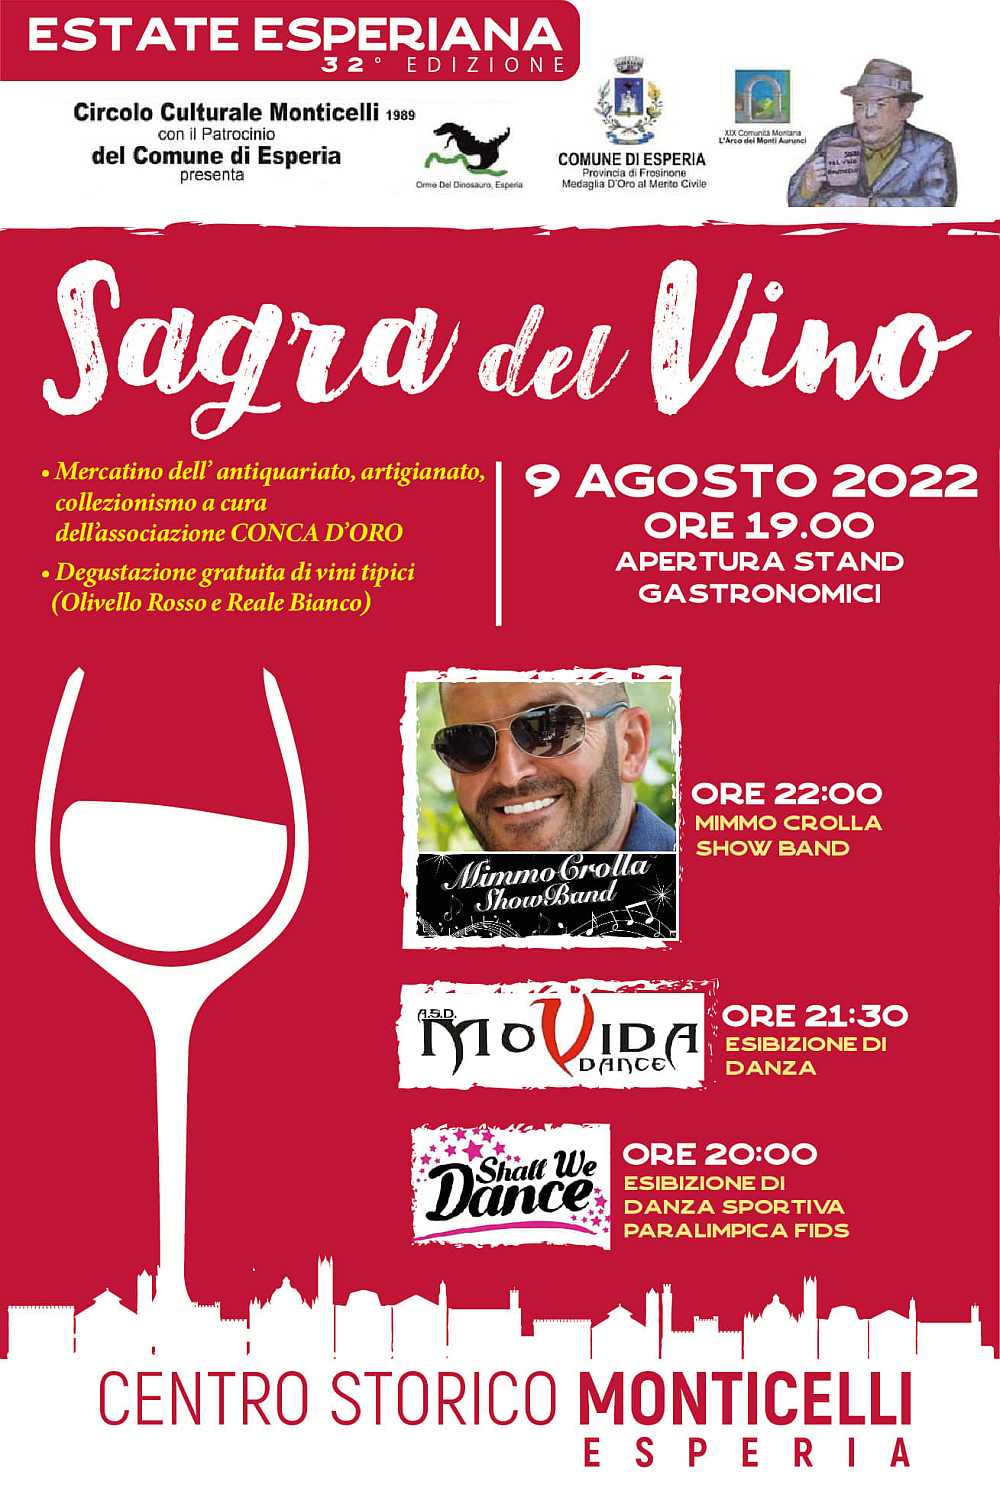 Monticelli di Esperia (FR)
"AperiVino e Sagra del Vino"
8-9 Agosto 2022 